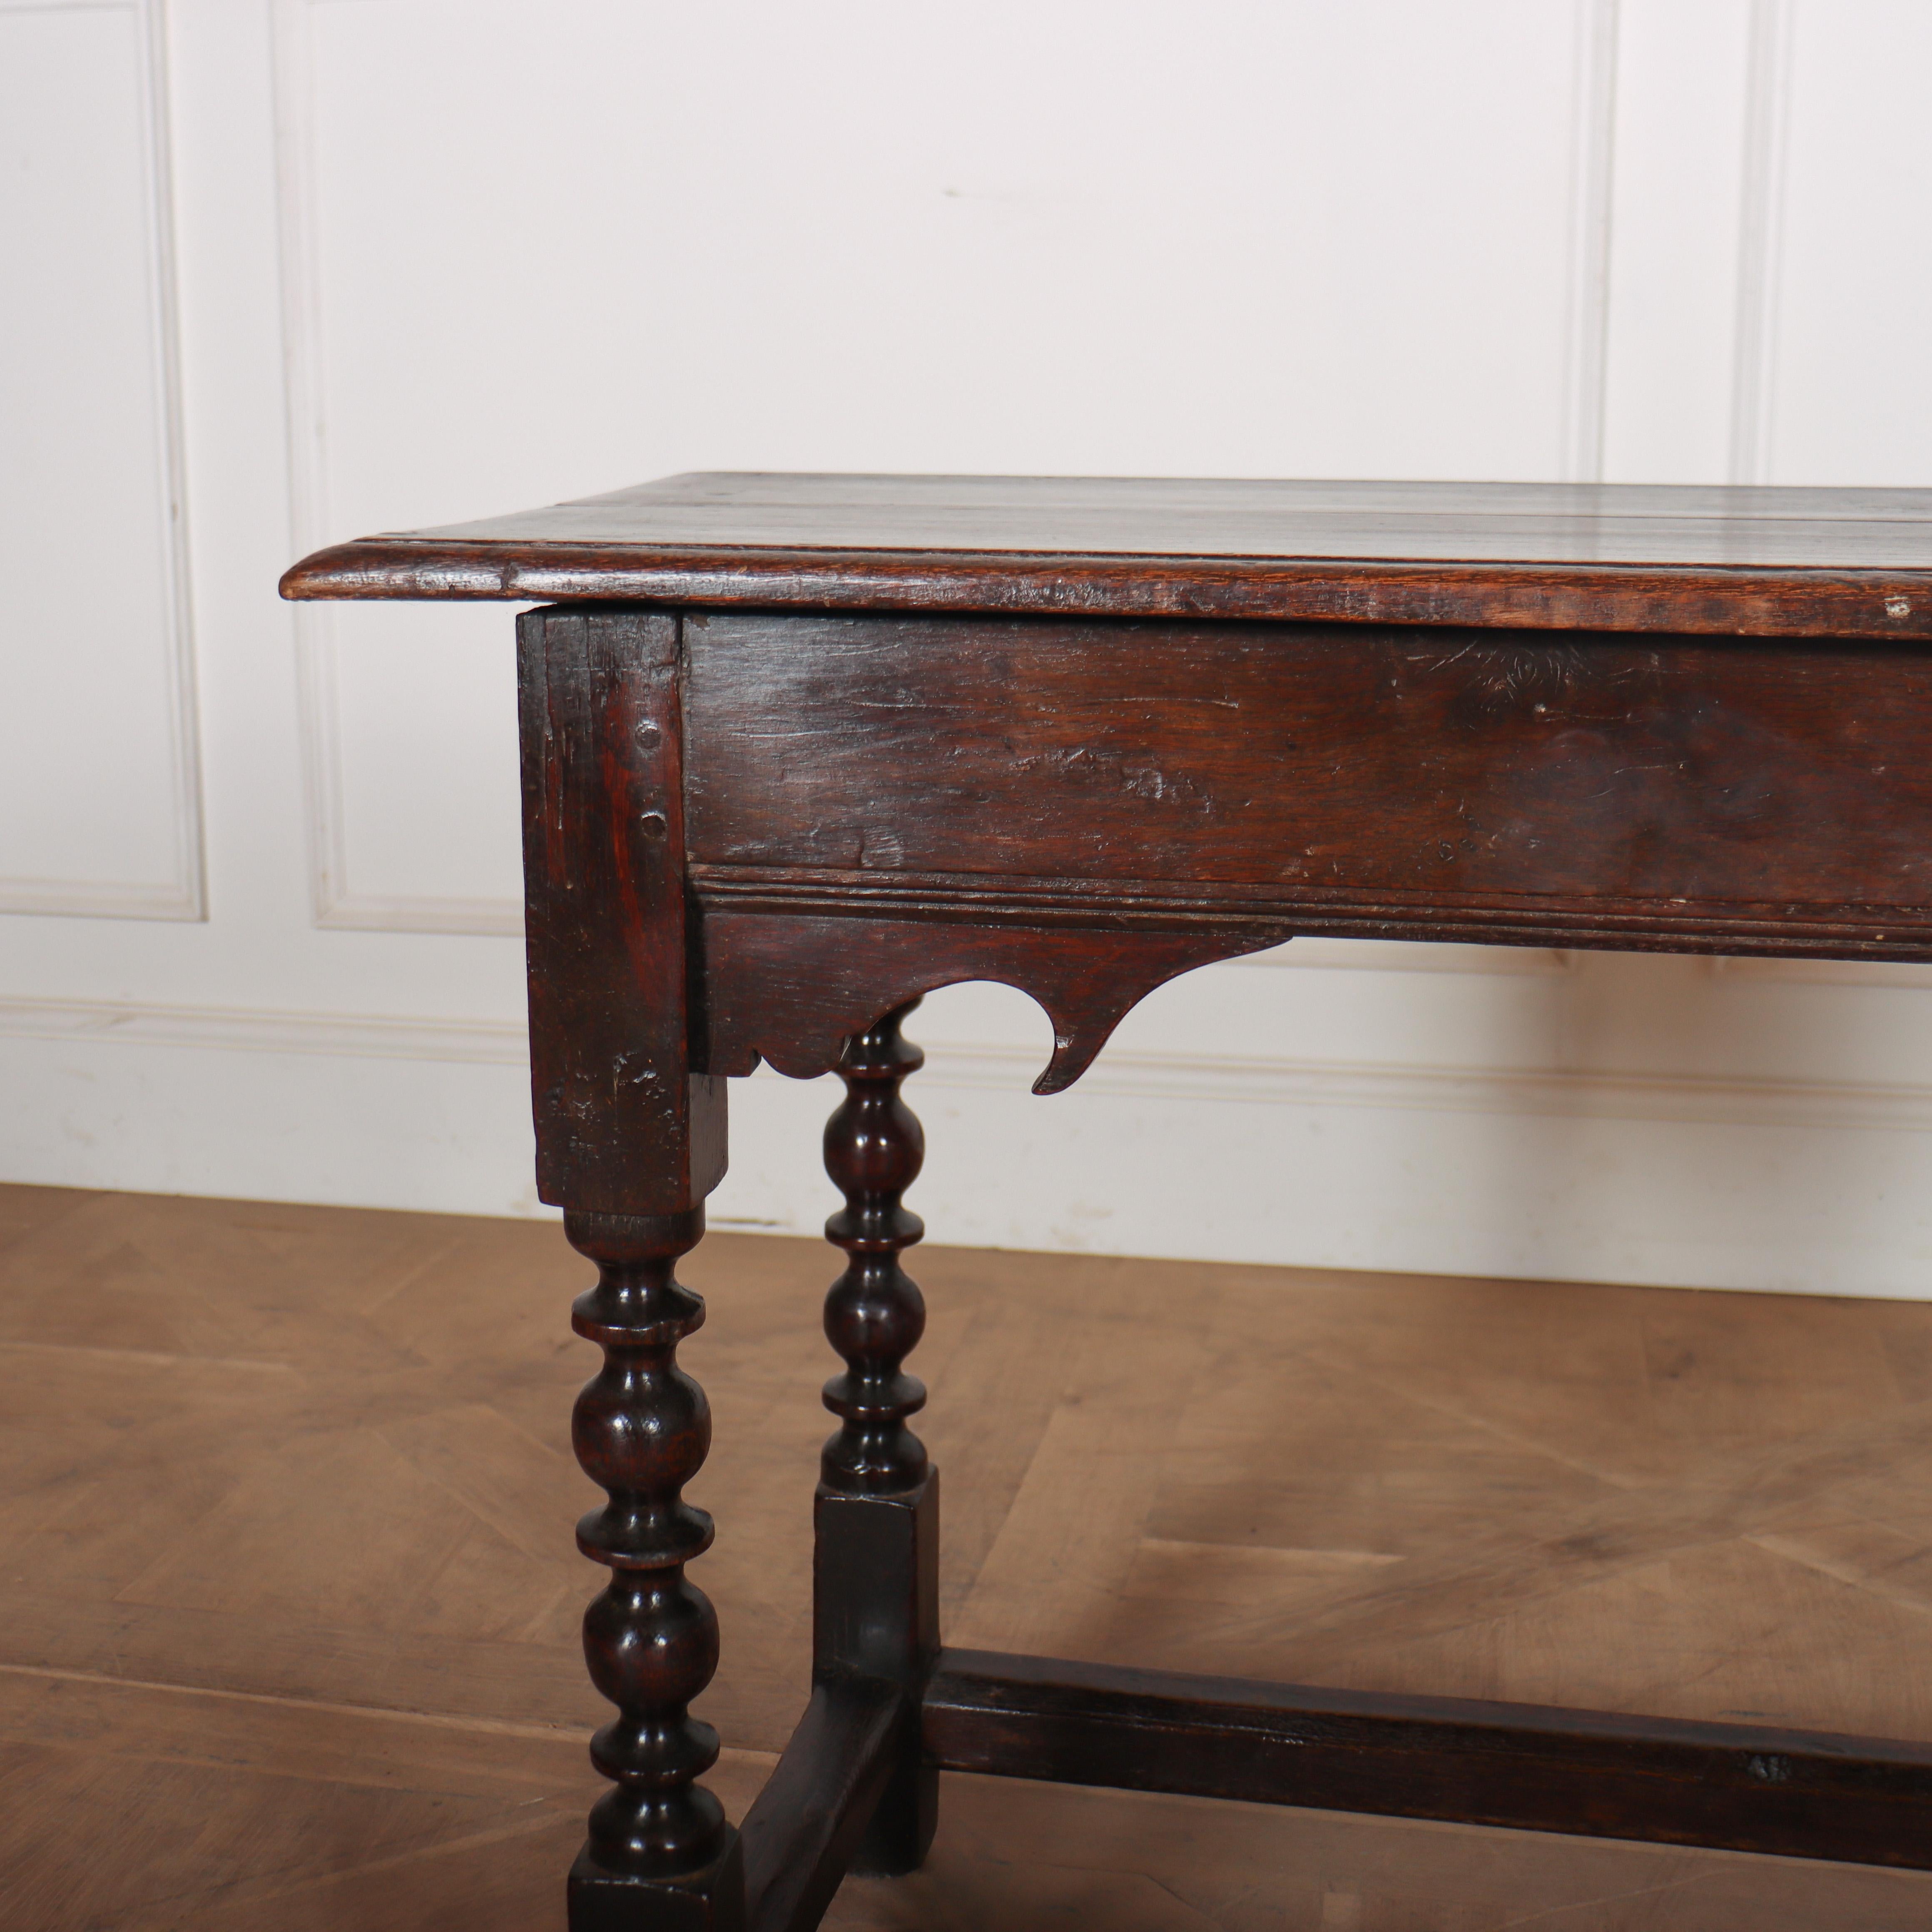 A.C.I.C., table d'appoint en chêne du 18ème siècle. 1760.

Référence : 8288

Dimensions
42 pouces (107 cm) de large
17,5 pouces (44 cm) de profondeur
27 pouces (69 cms) de hauteur